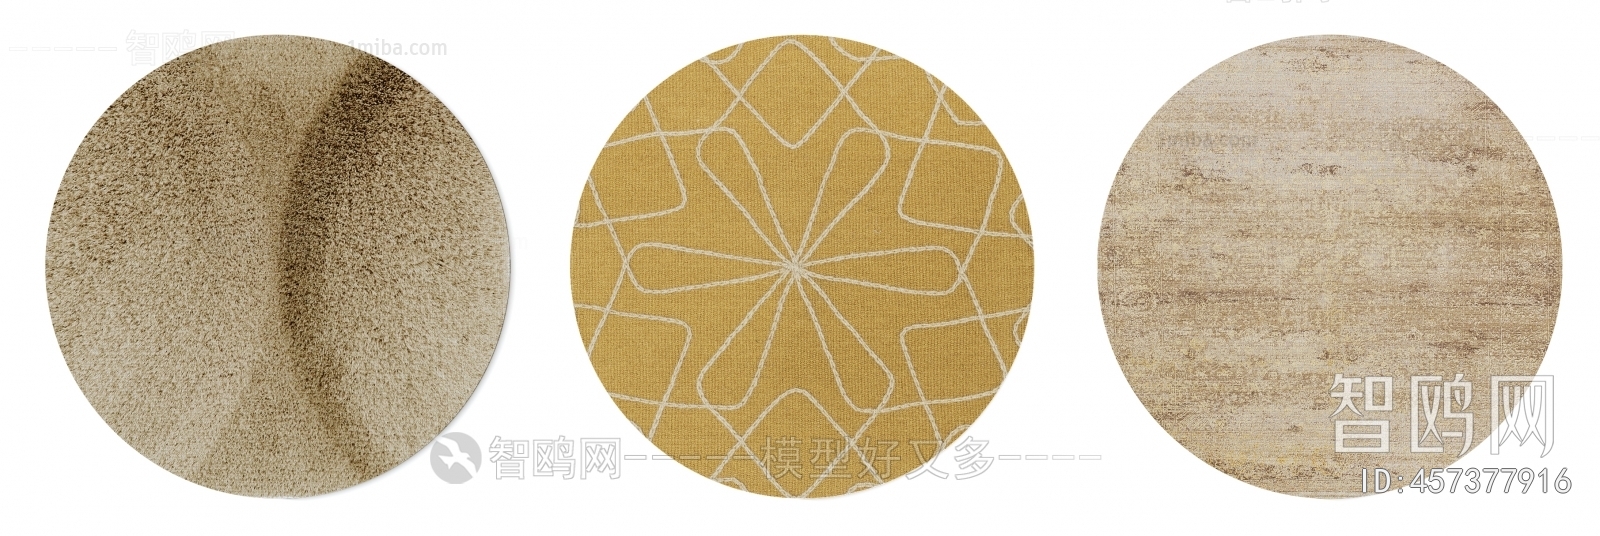 Modern Circular Carpet